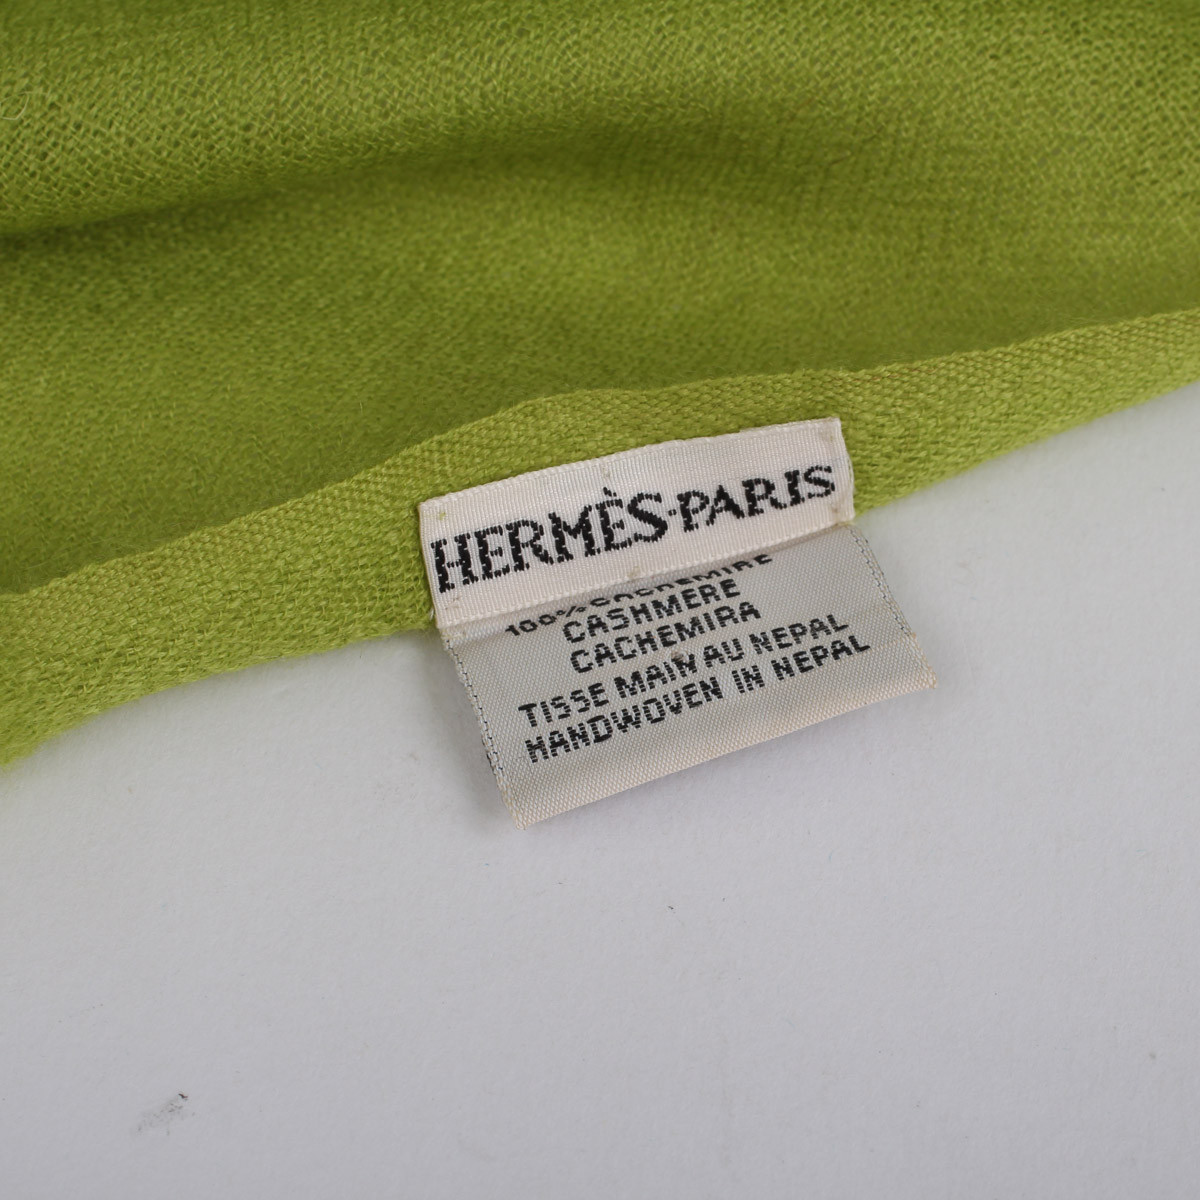 Hermès étole vert anis occasion authentifiée